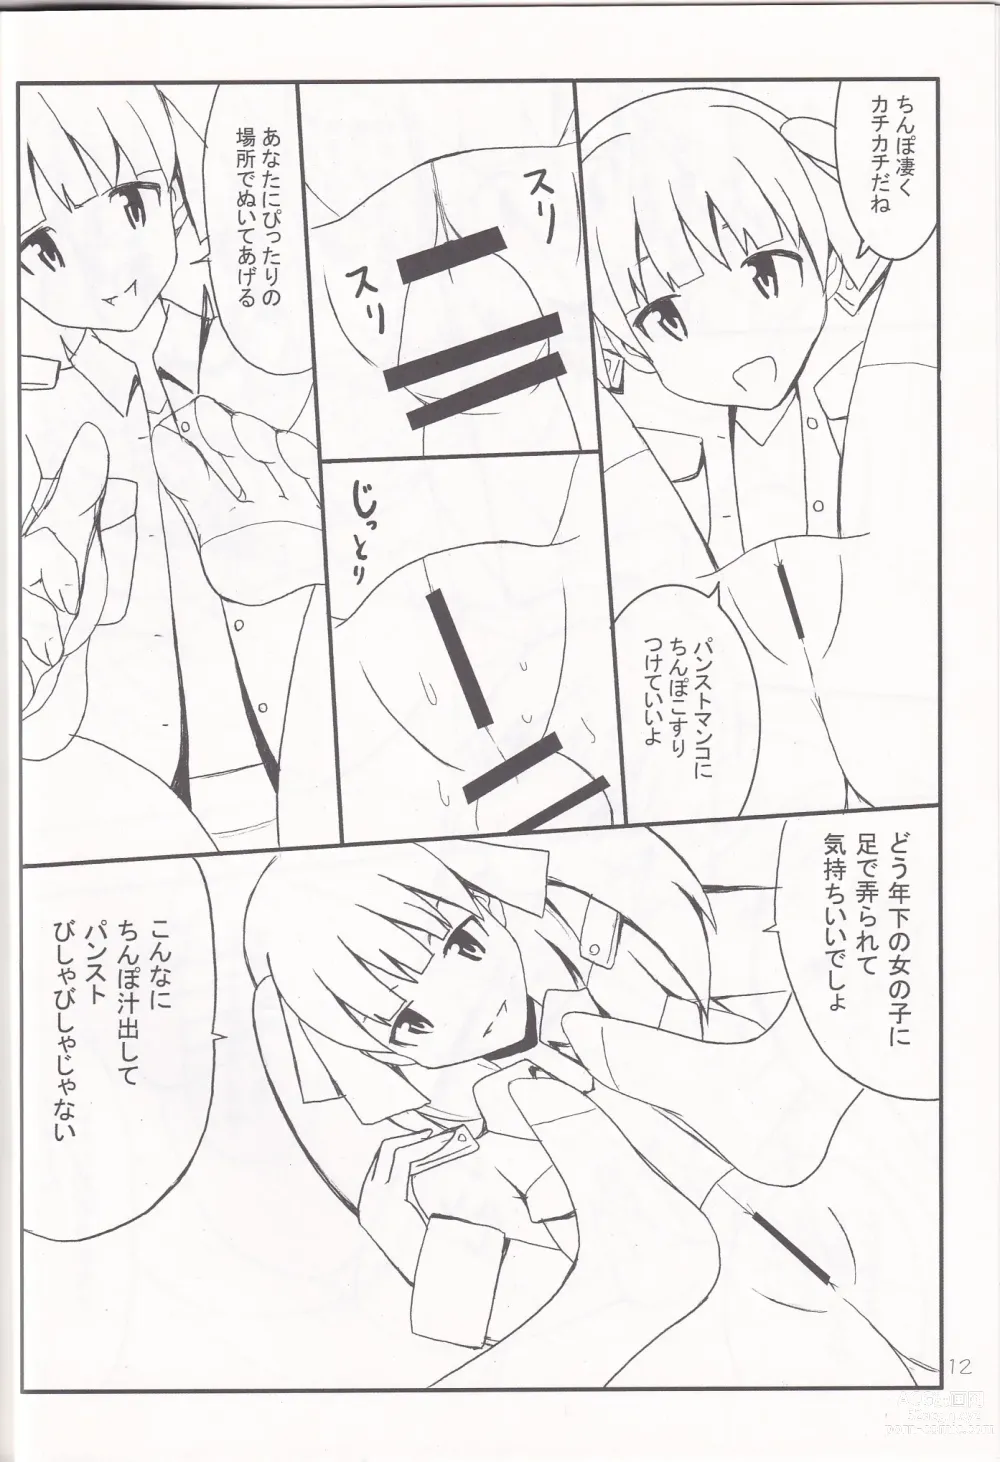 Page 11 of doujinshi Ashi no Ura